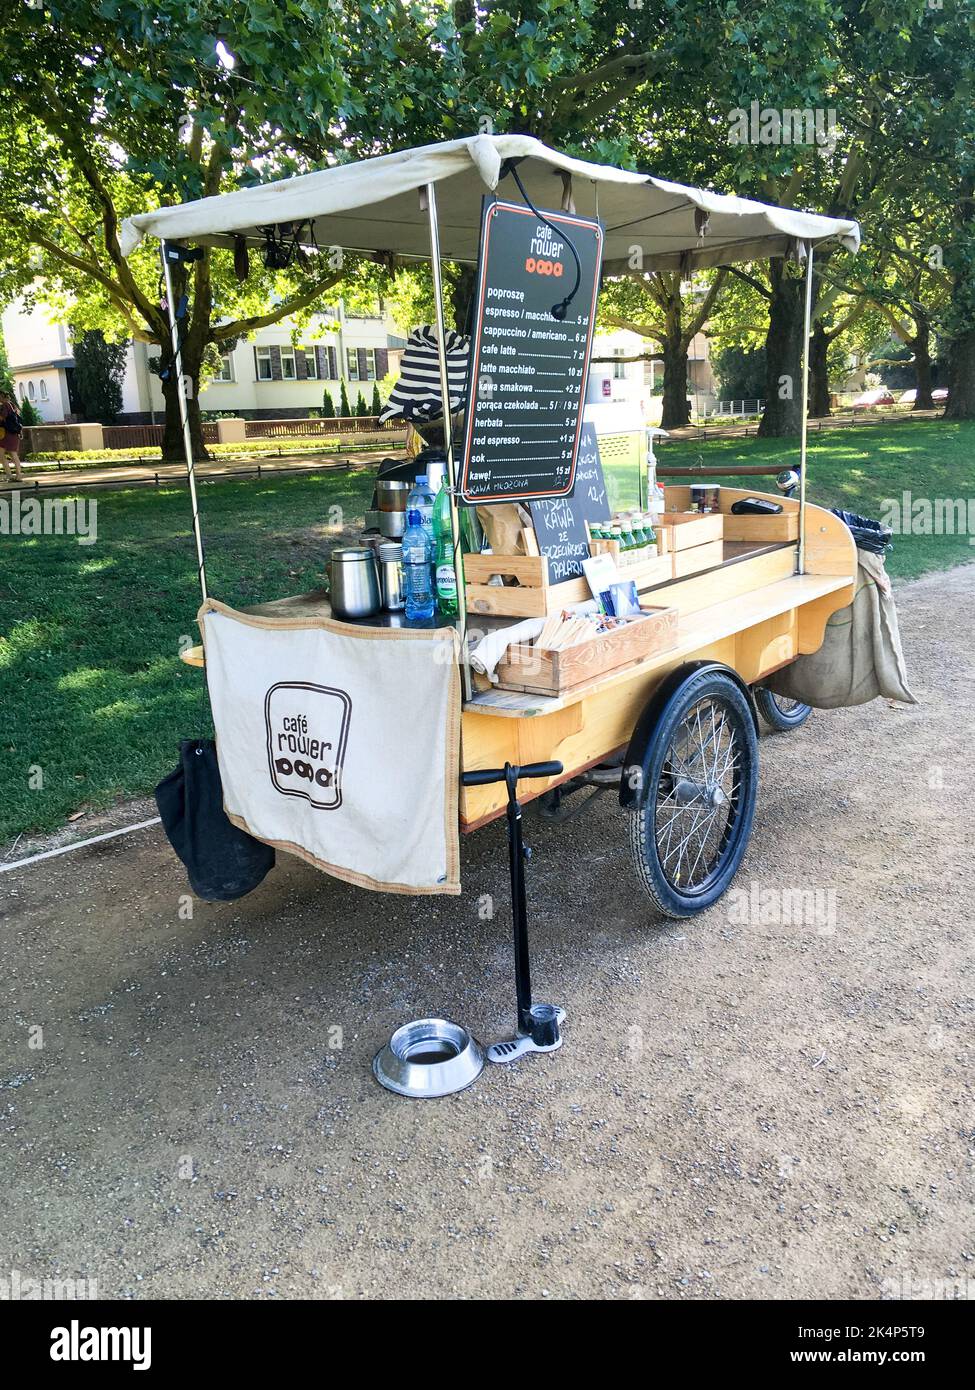 Szczecin, Pologne - 13 août 2018: Kiosque mobile pour la vente de café et de boissons Banque D'Images